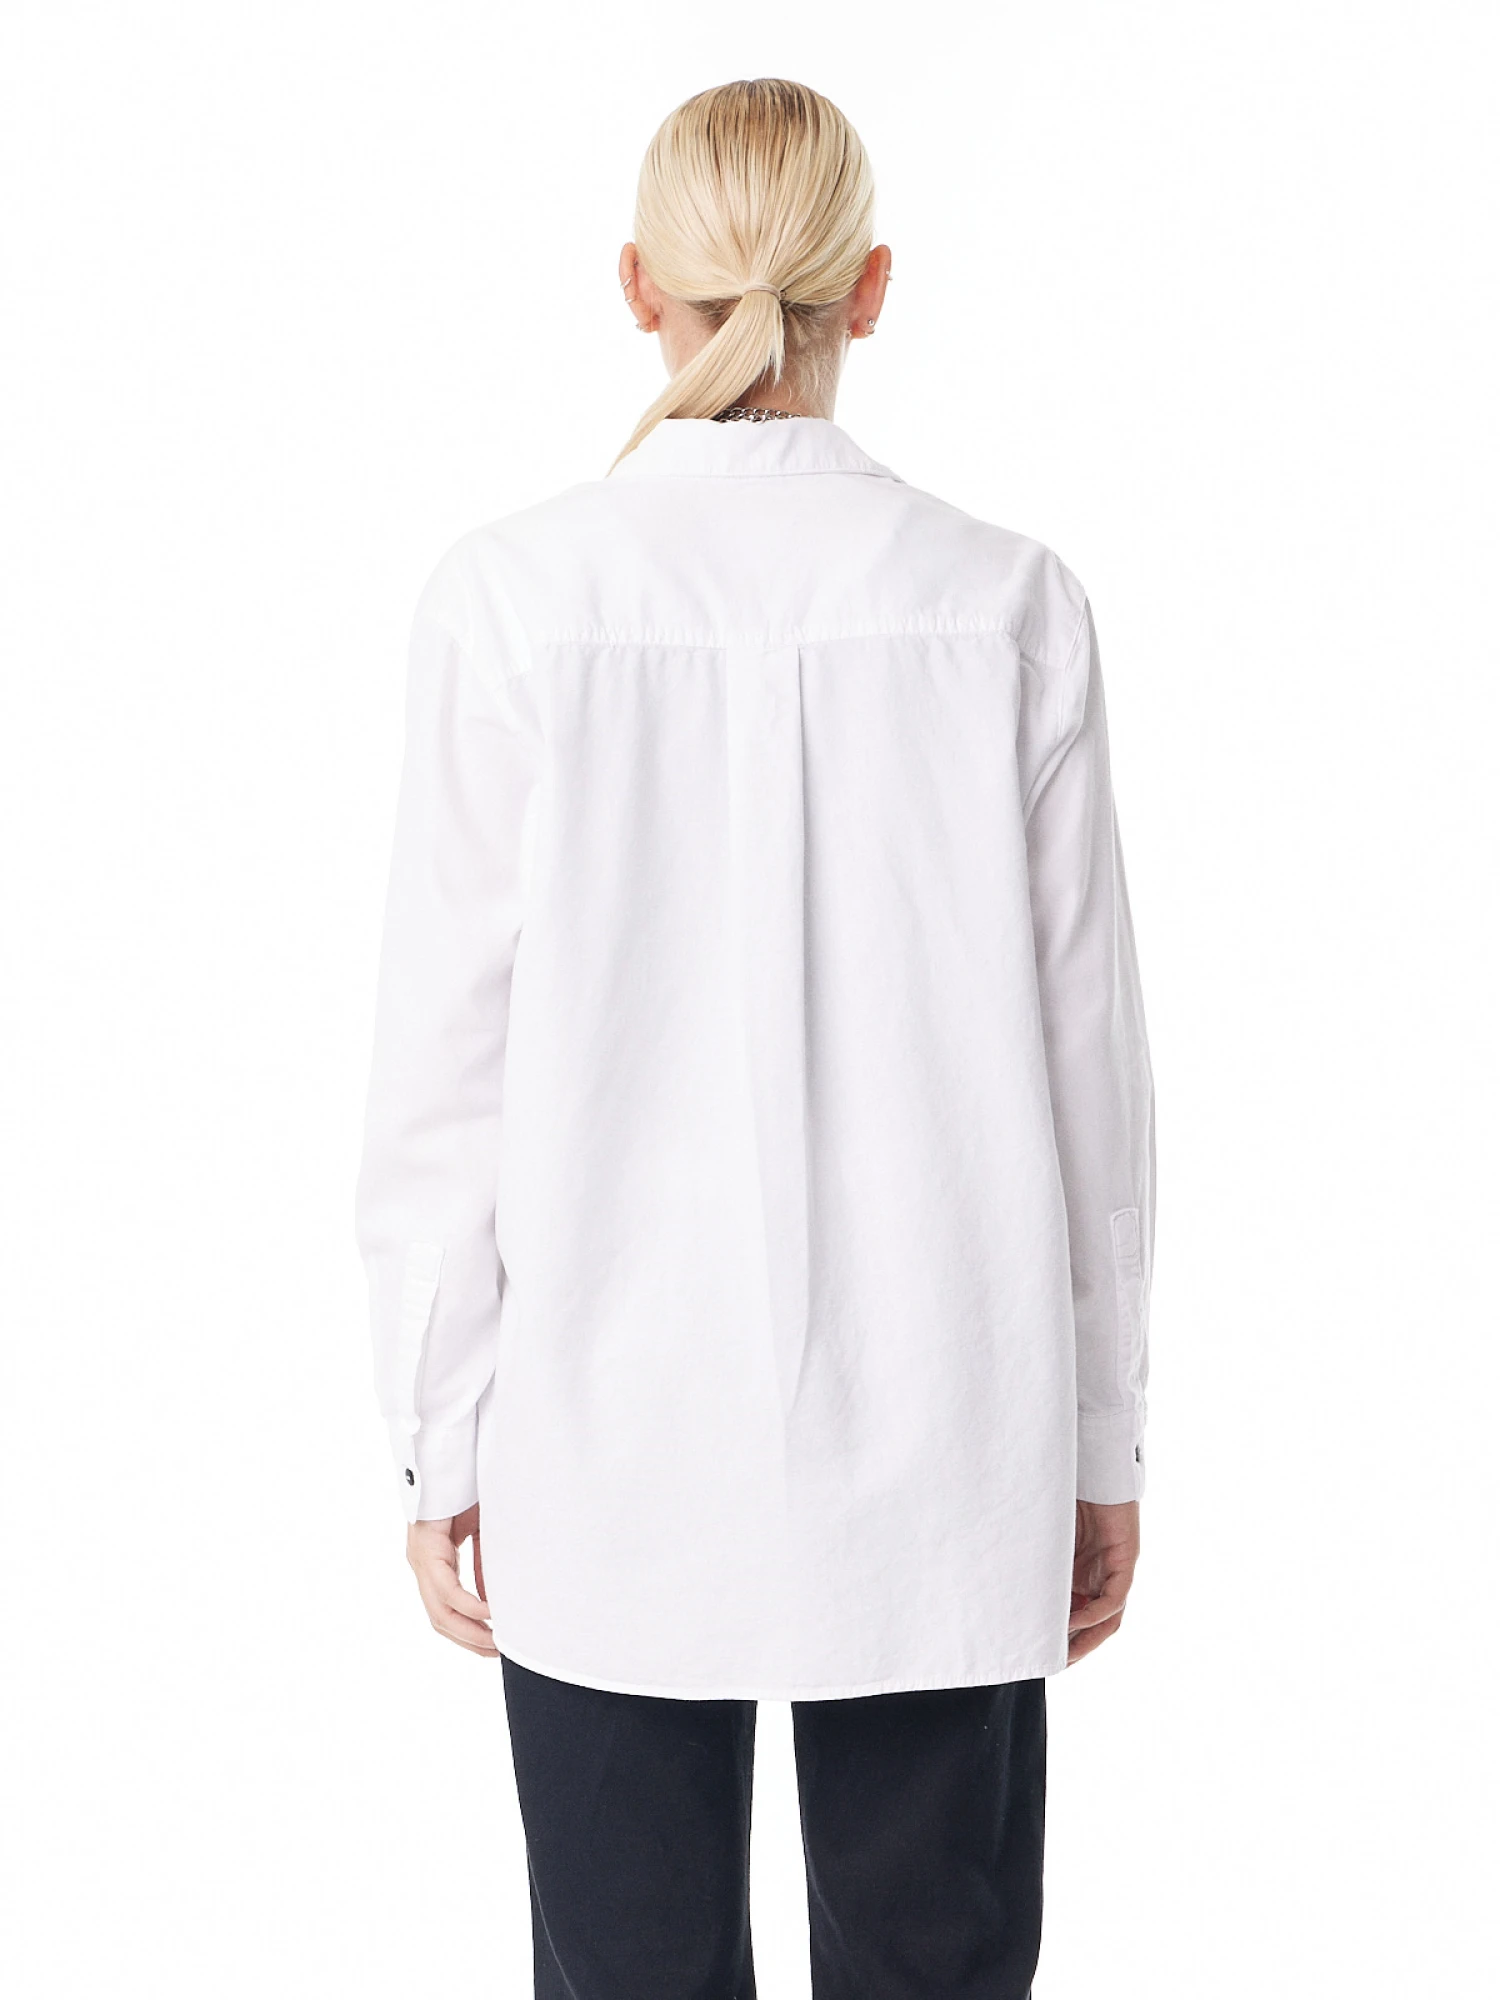 Camisa Noble Oxford blanco l